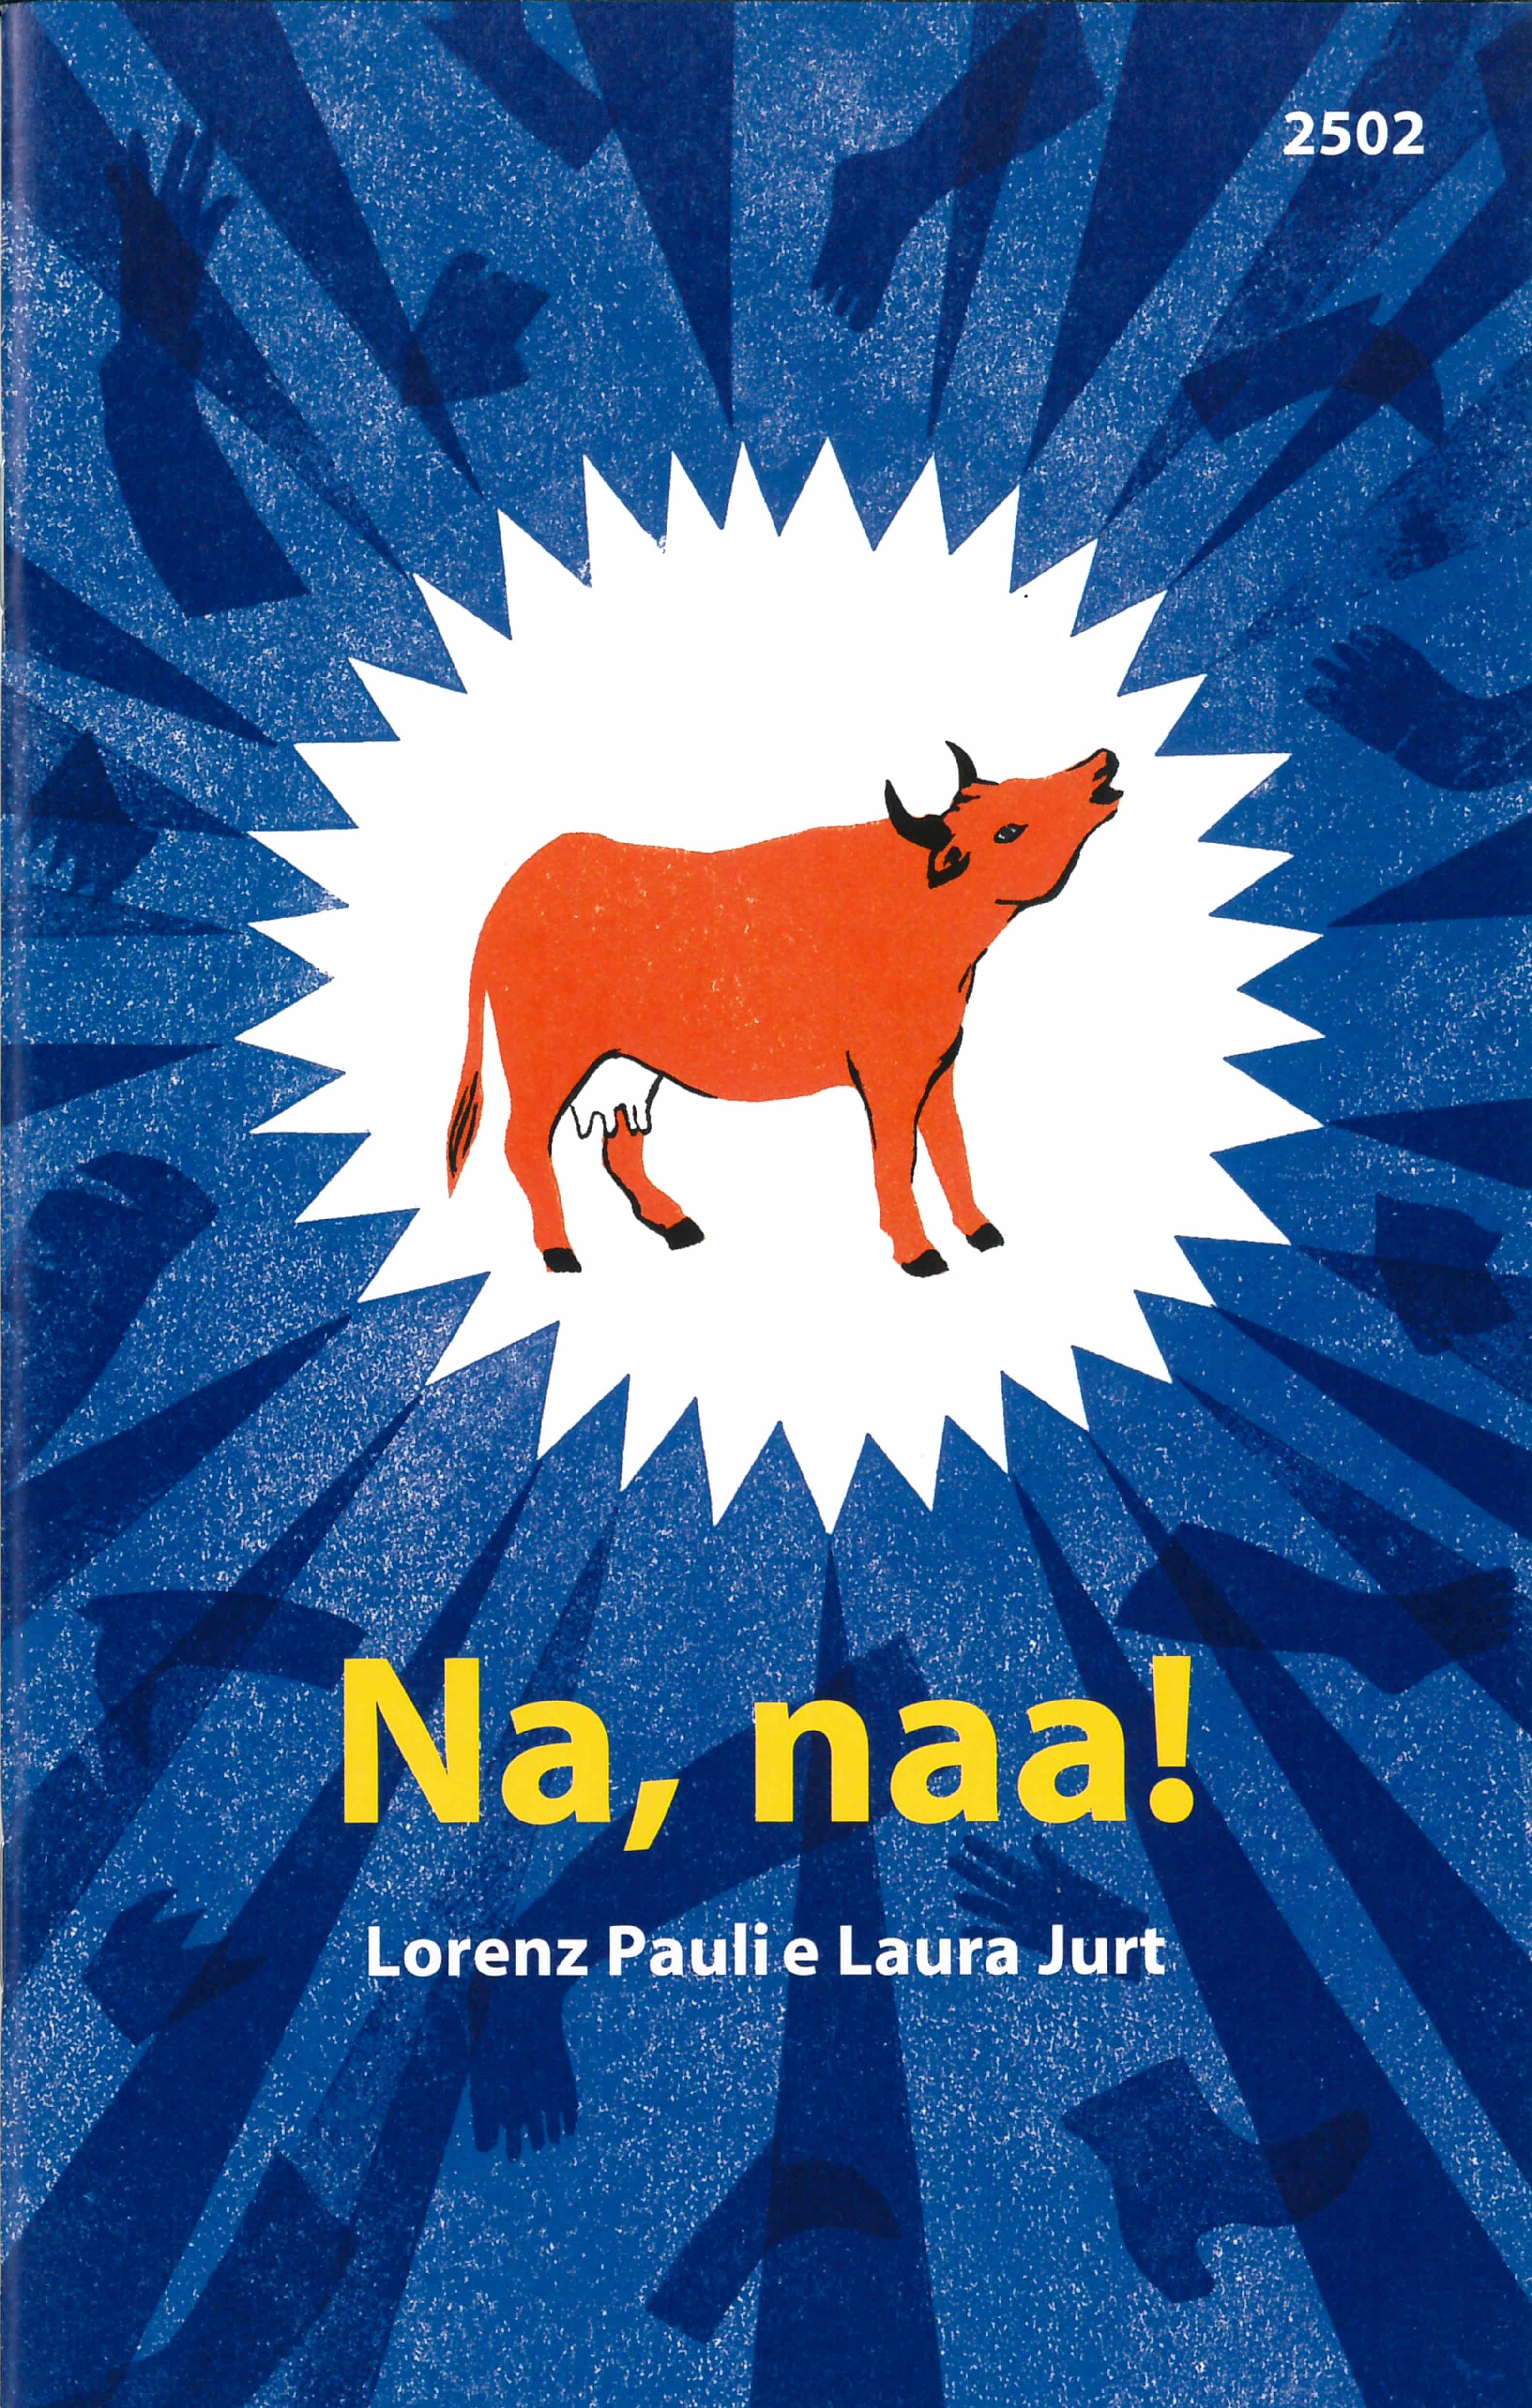 Na, Naa!, ein Kinderbuch von Lorenz Pauli, Illustration von Laura Jurt, SJW Verlag, Sprachspiele